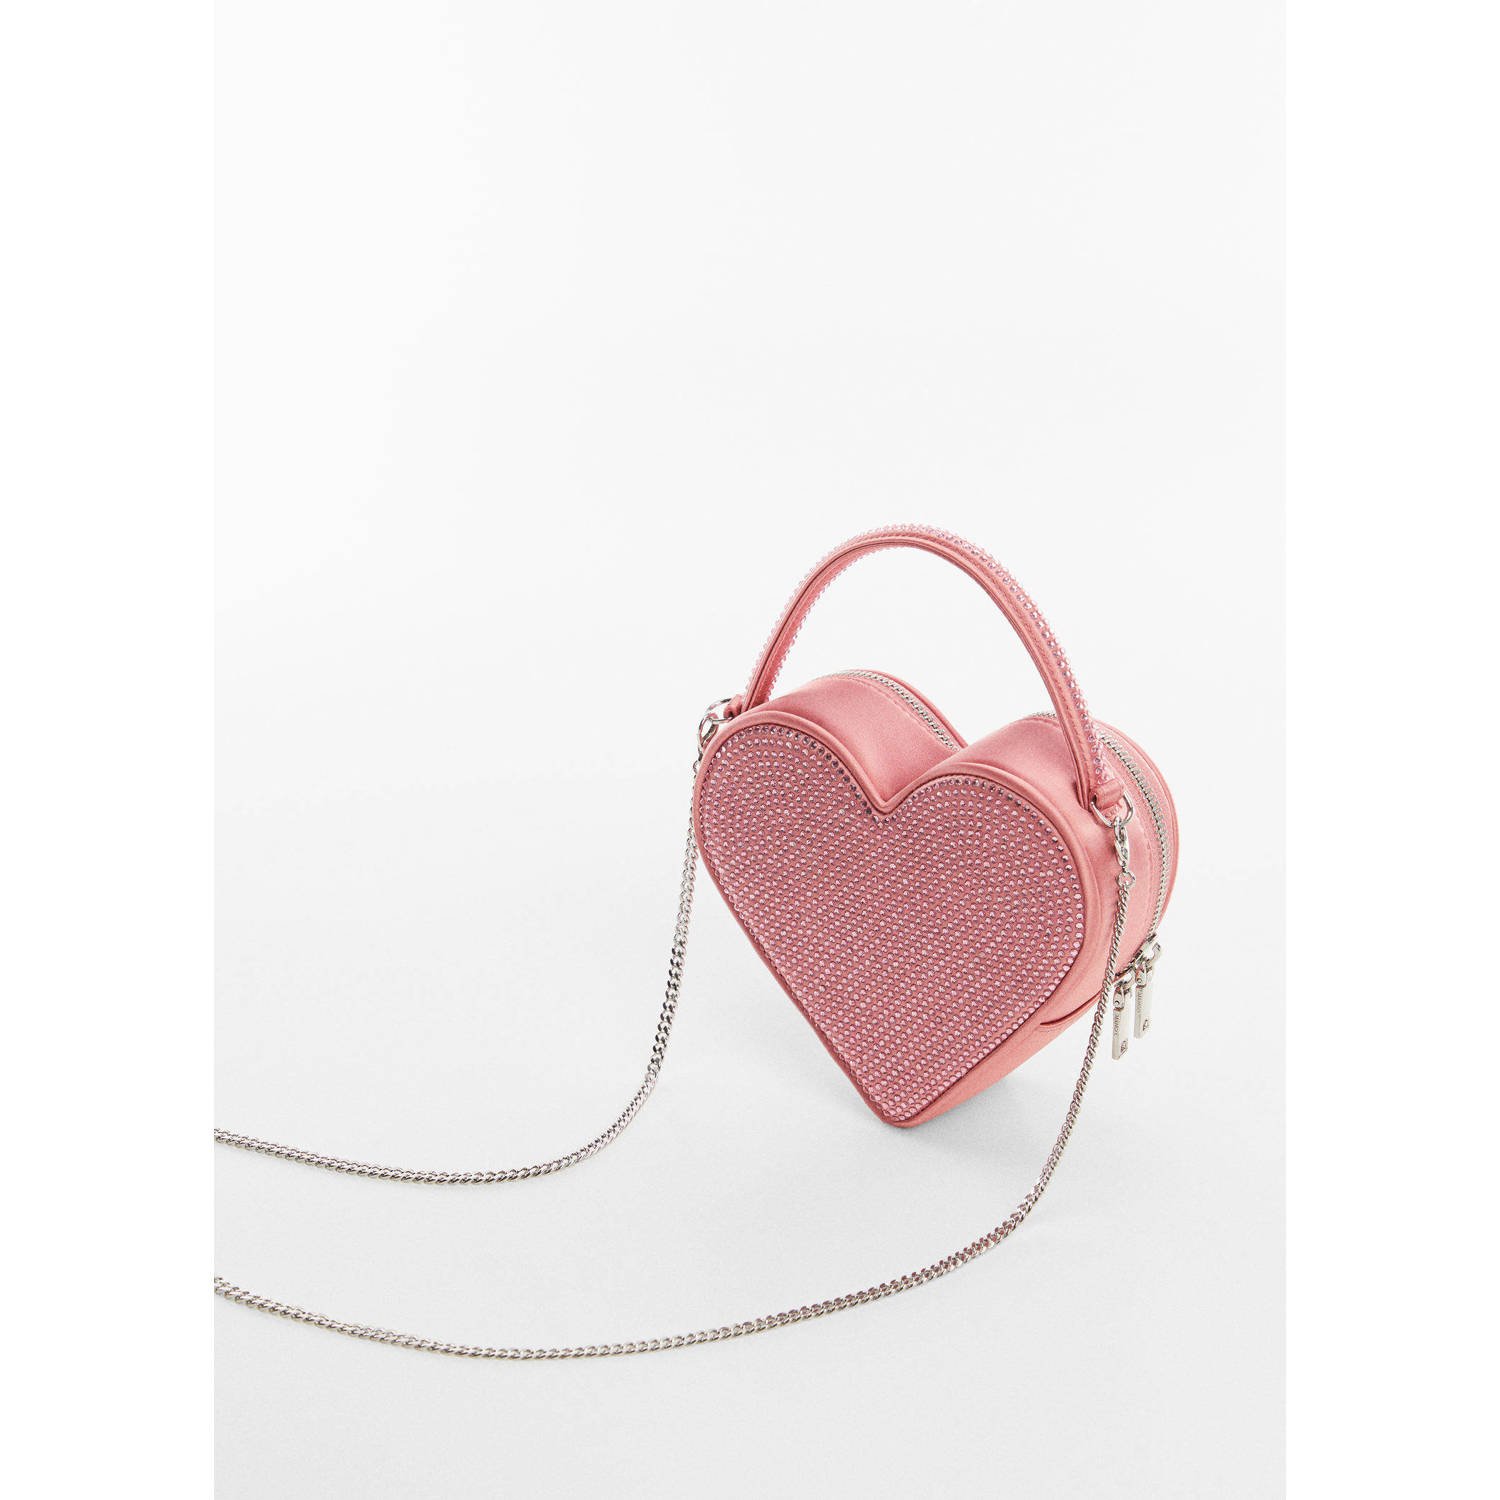 Mango hartvormige crossbody tas met strass roze